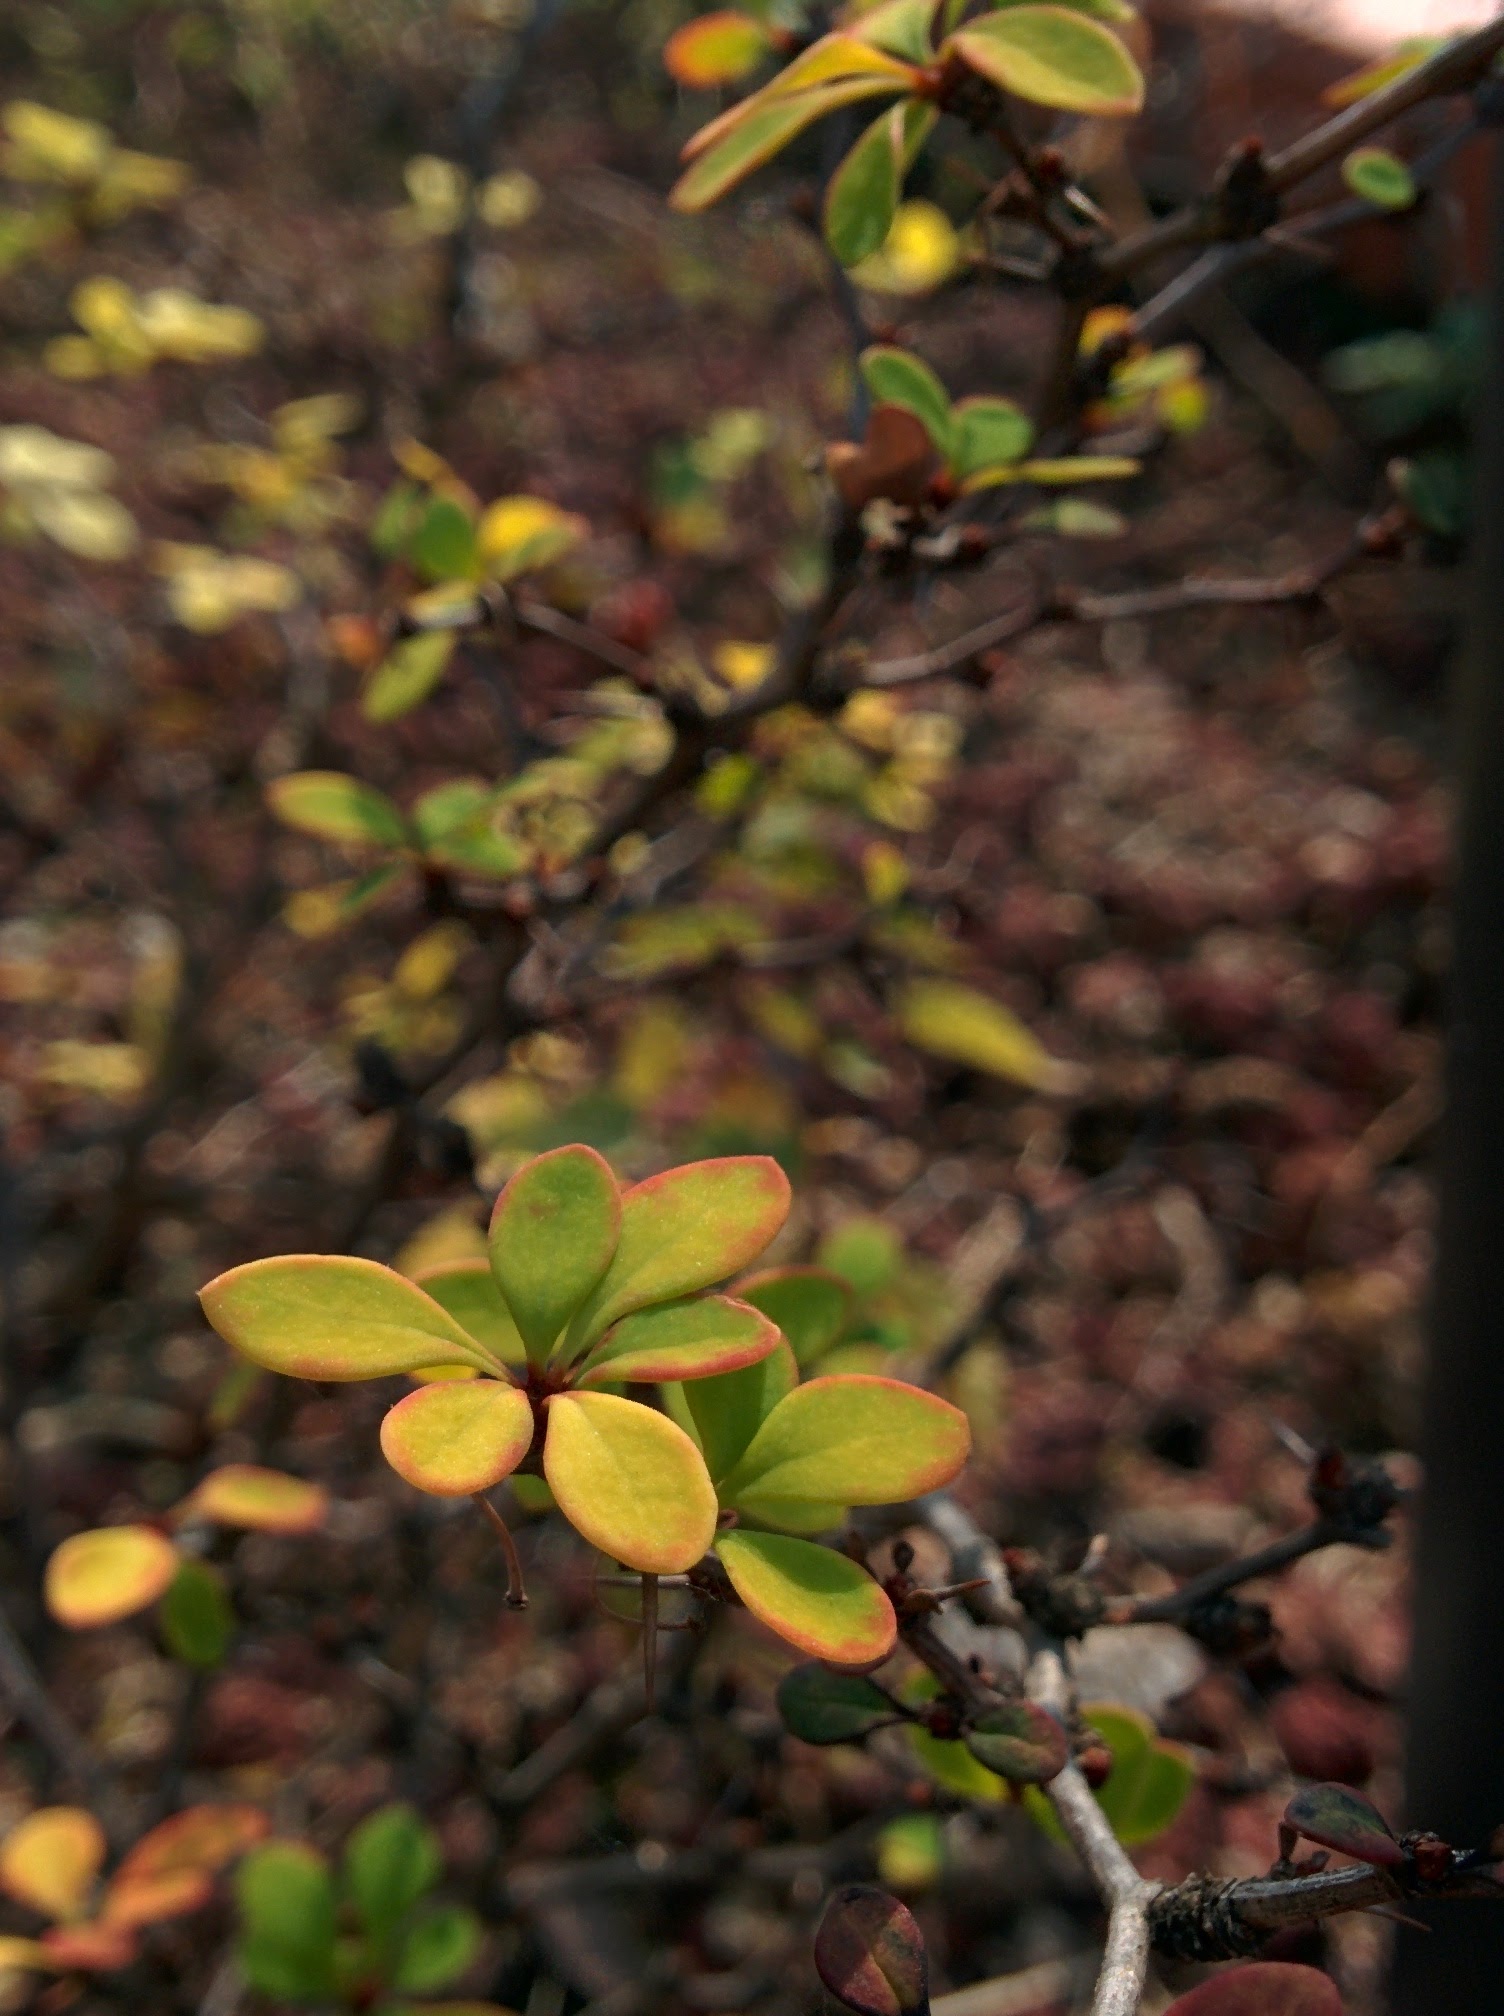 IMG_20151016_121909.jpg 가시가 달린 키작은 관목의 붉은색 열매, 흰색으로 물든 잎 -- 일본매자나무